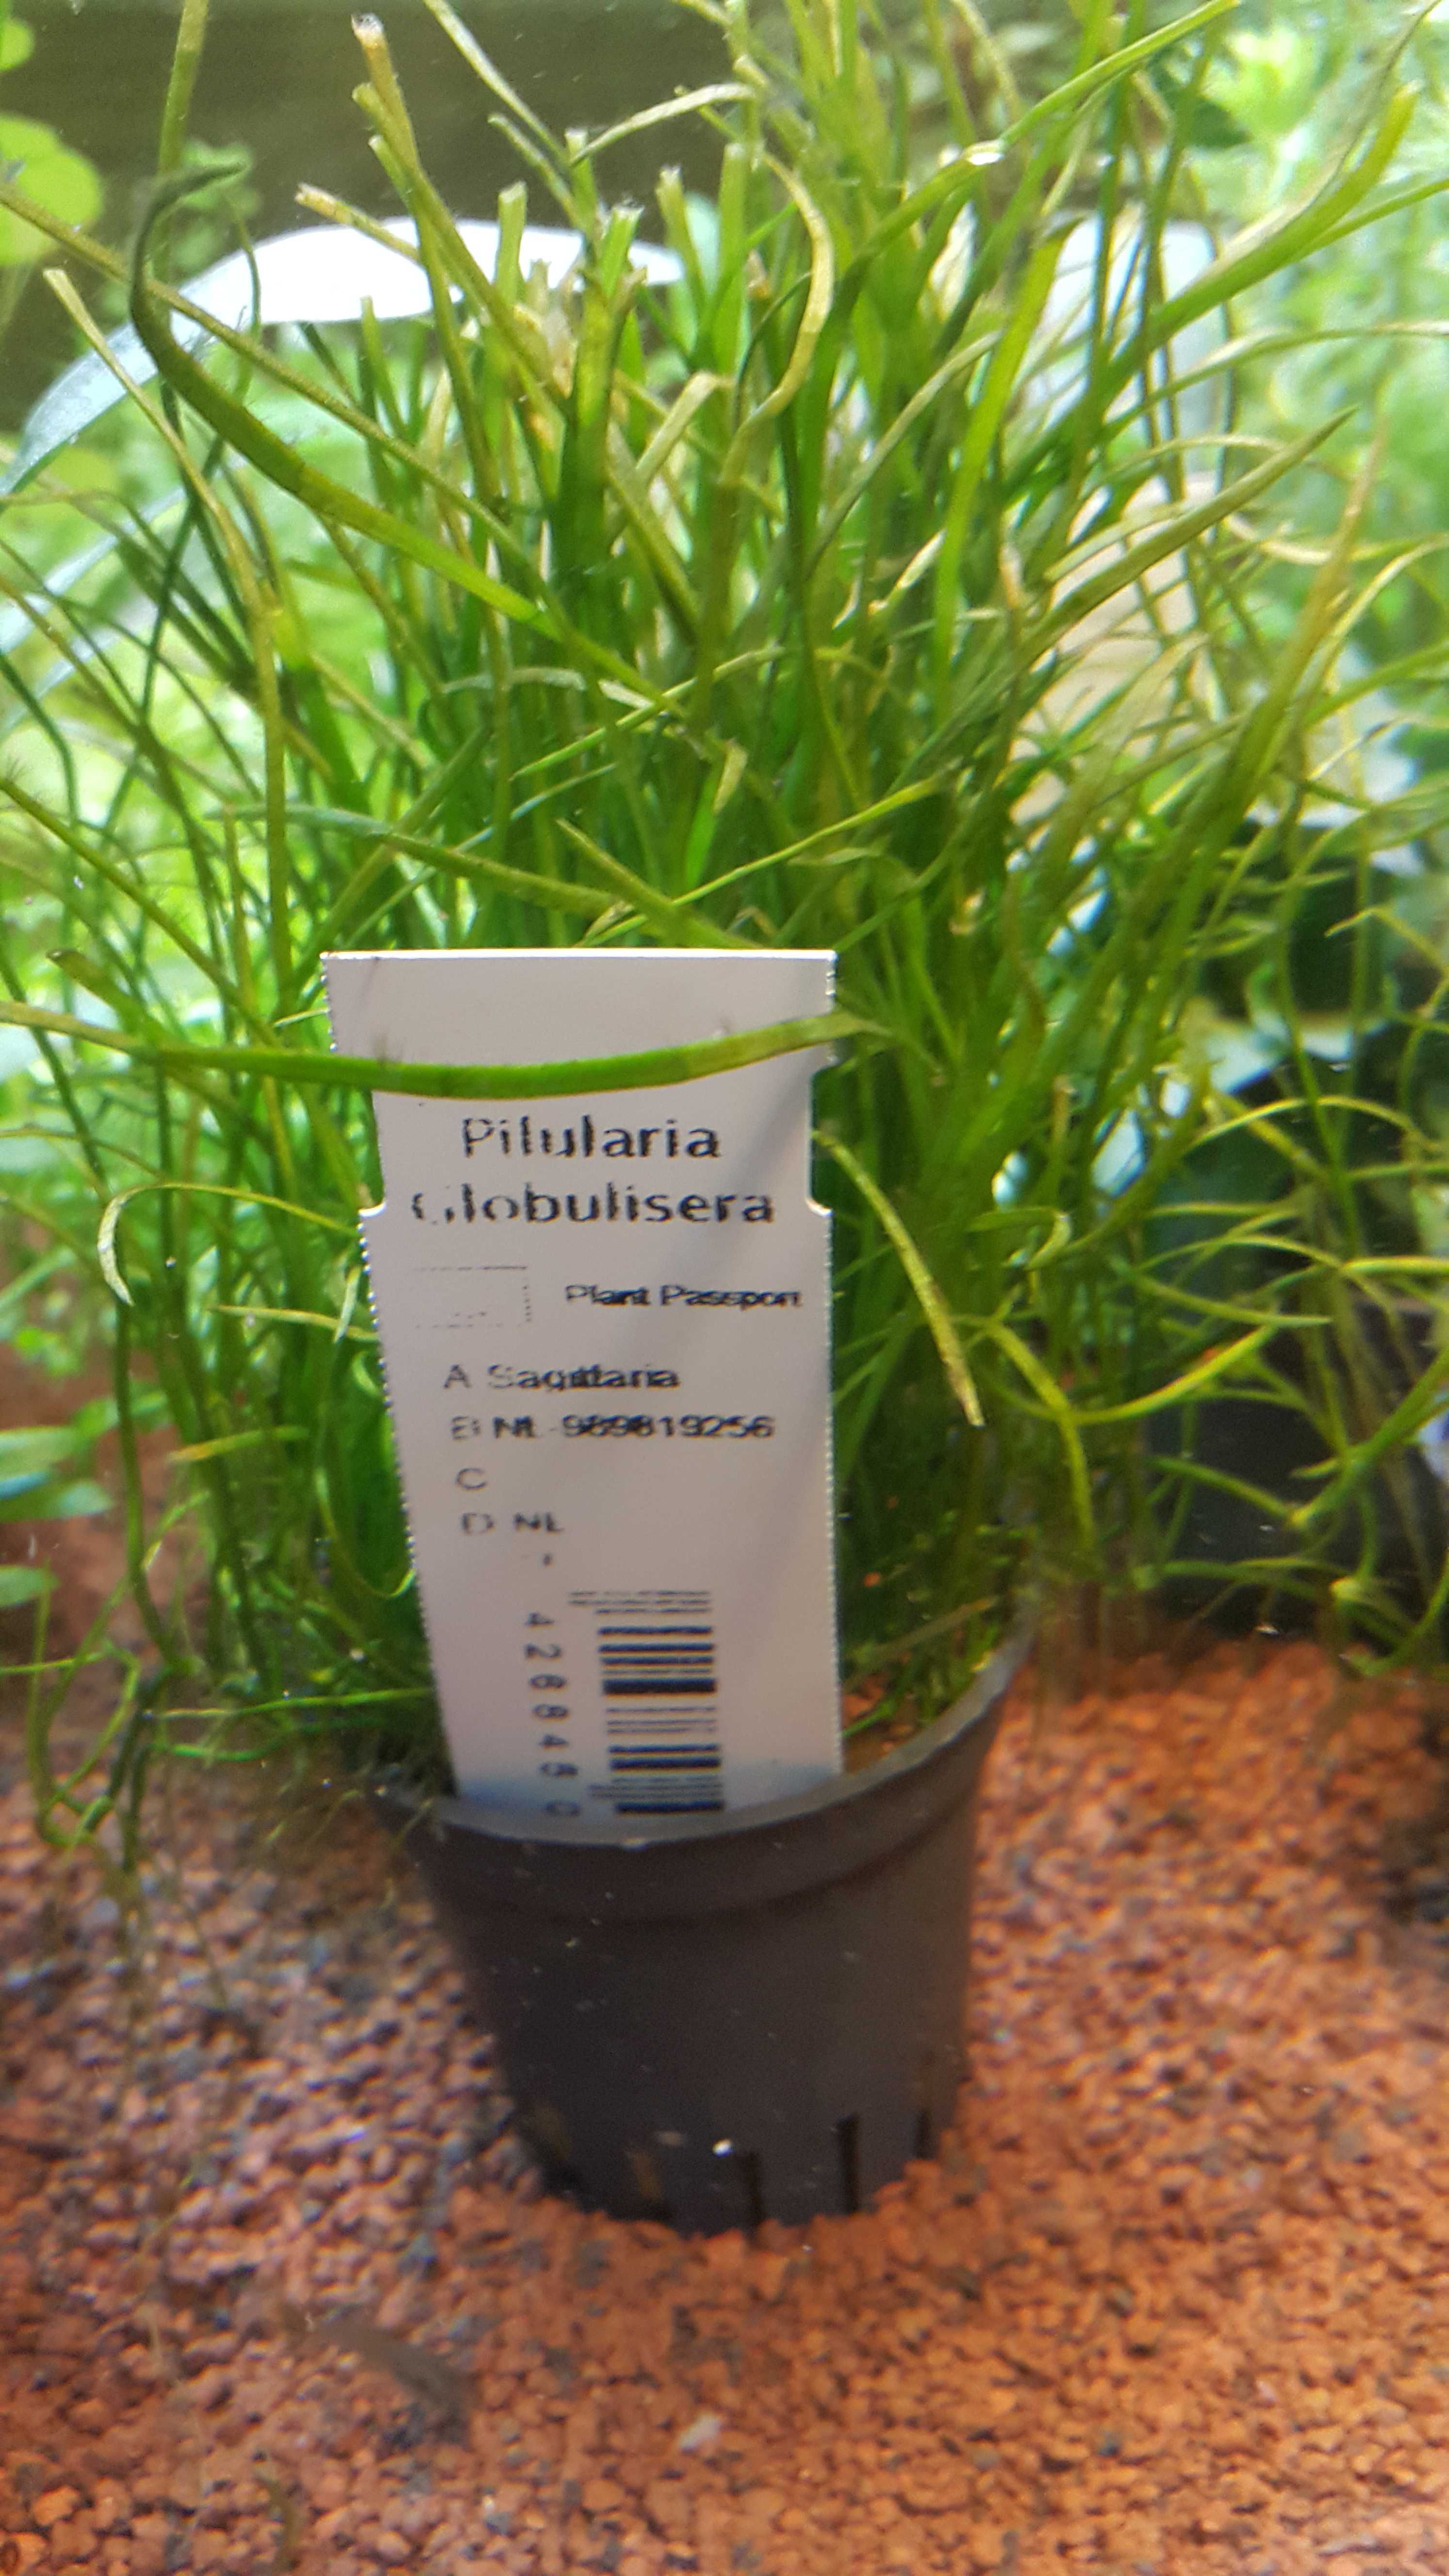 Pilularia Globulisera/Rośliny akwariowe w koszyczkach